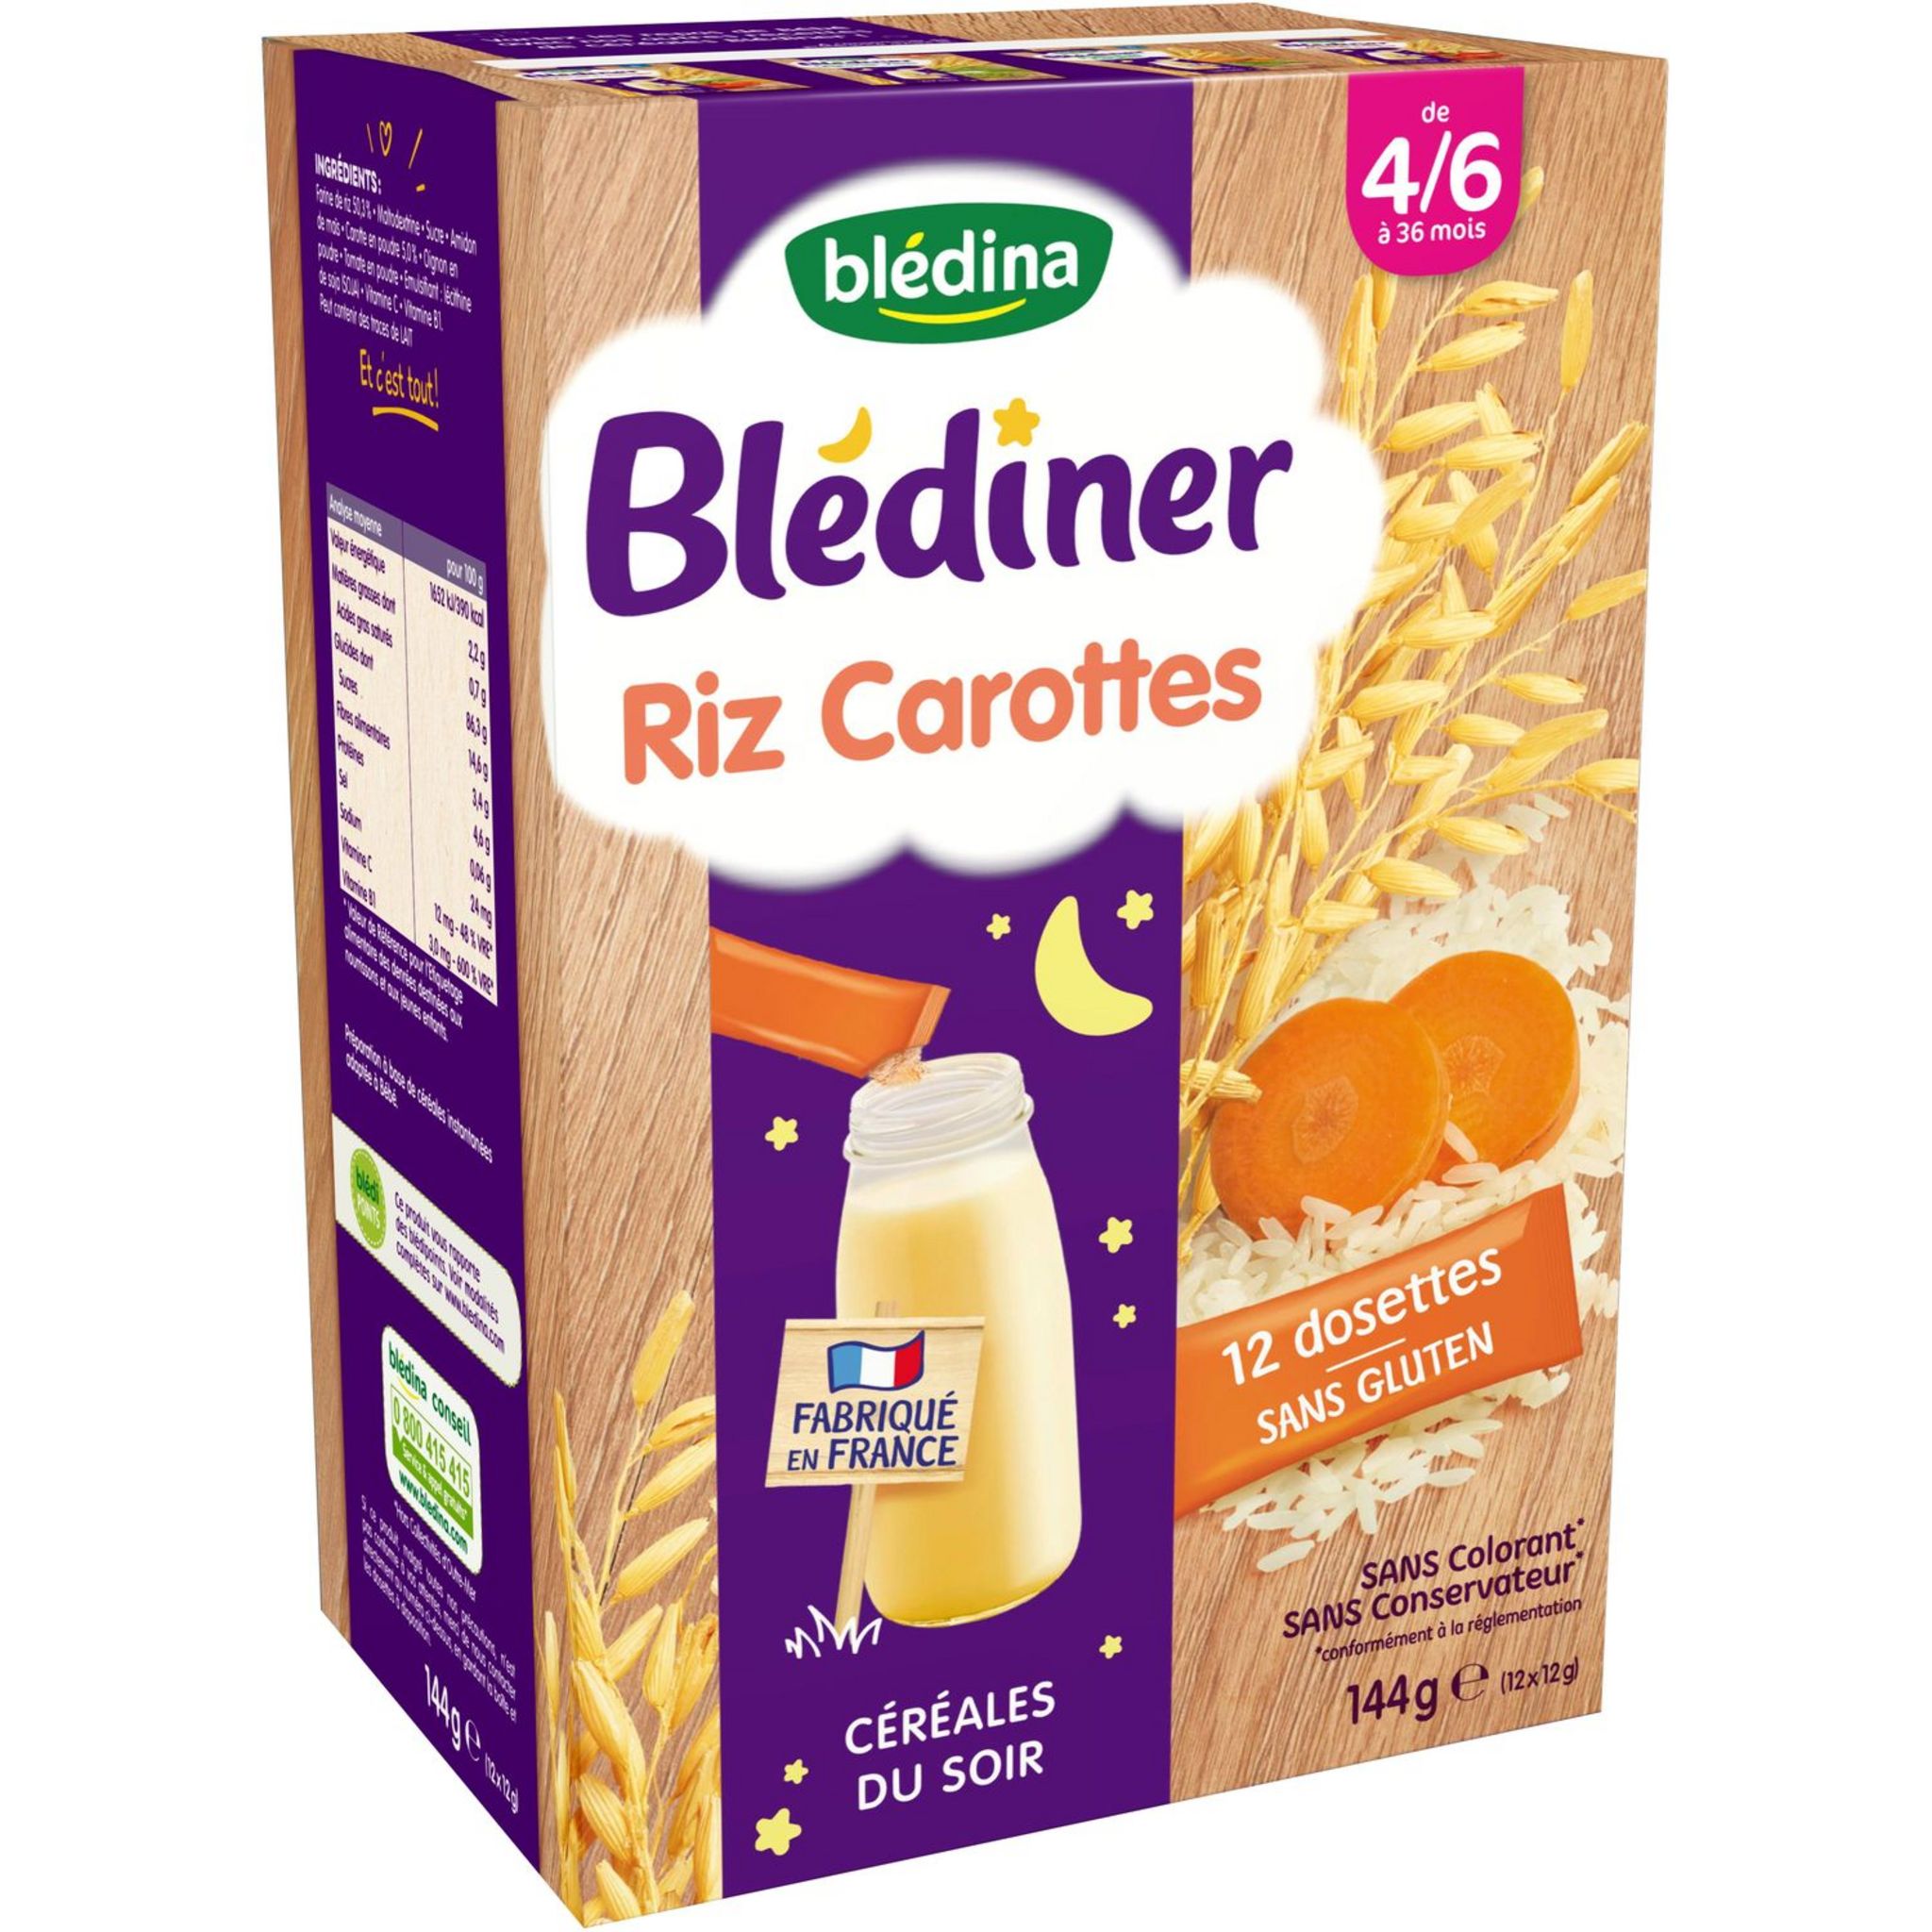 BLEDINA Blédina Blédiner dossettes céréales riz carotte en poudre